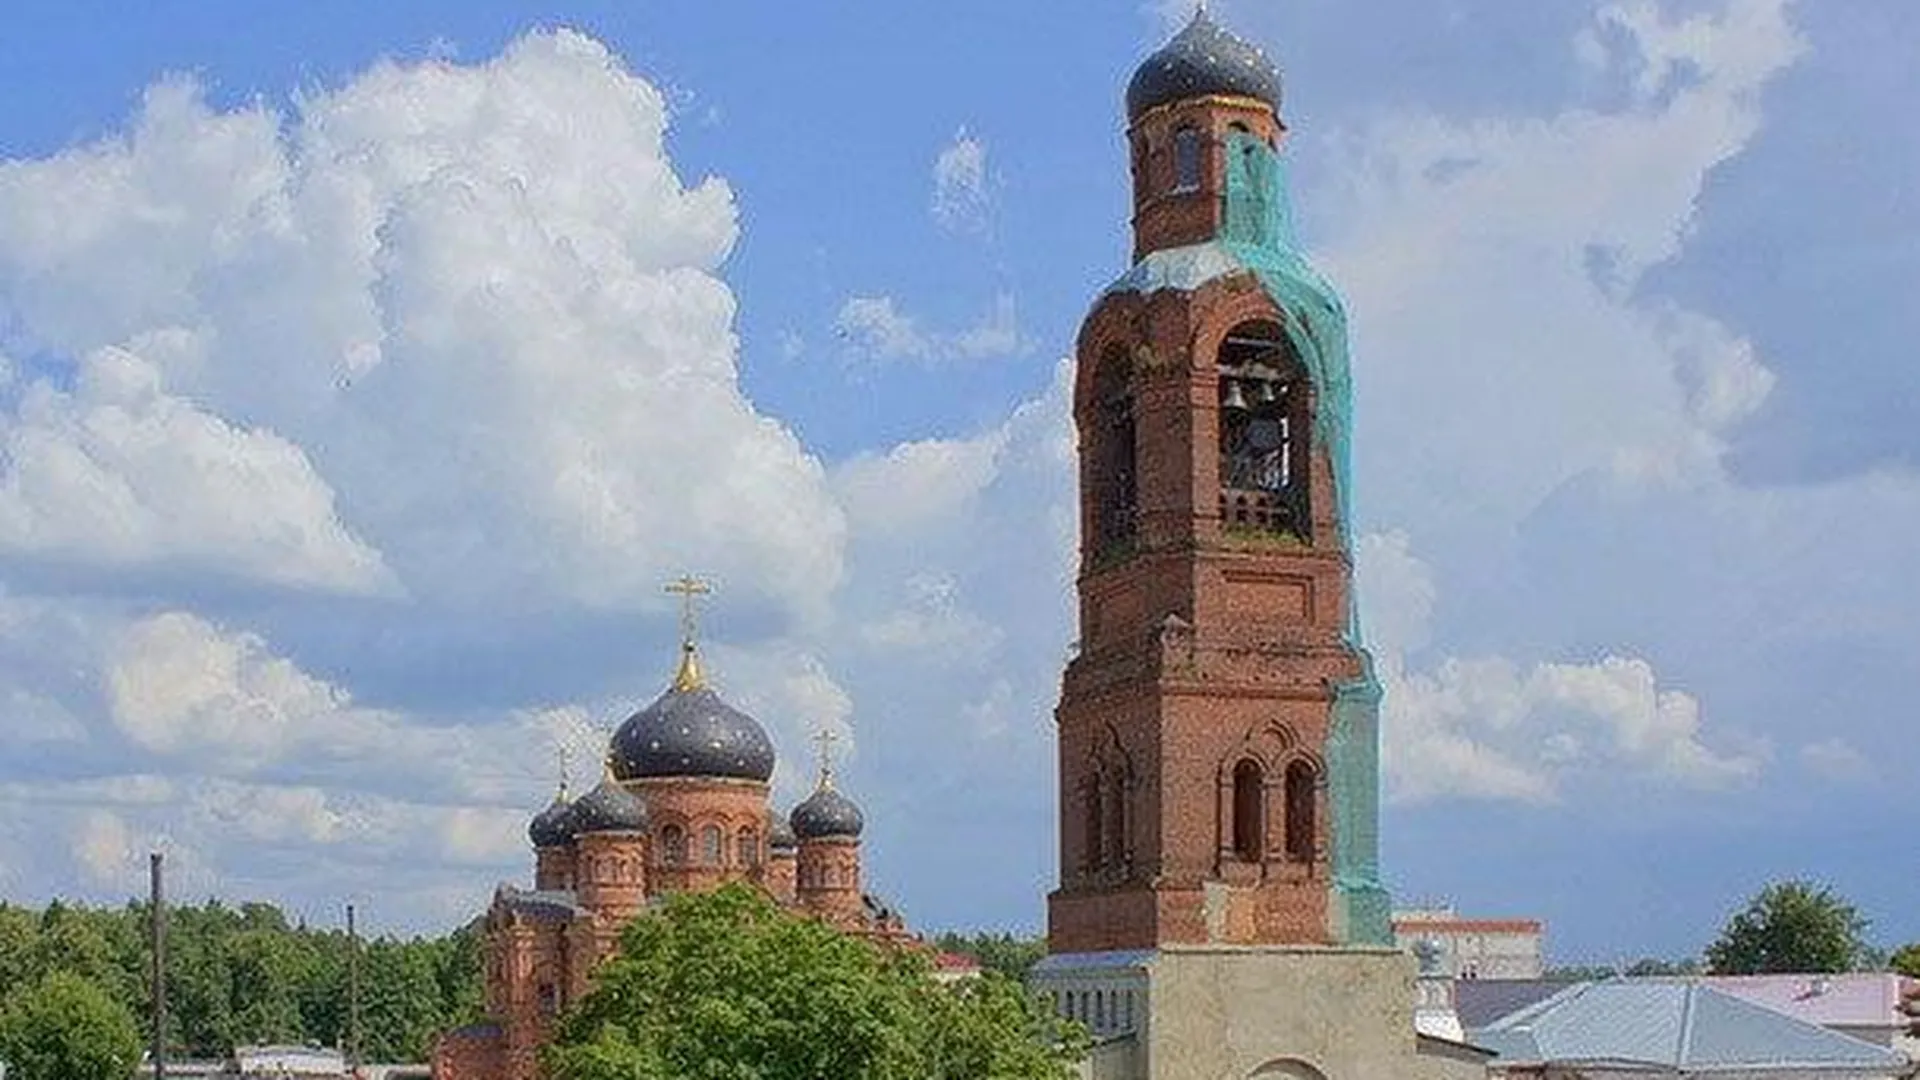 Колокольне, изображенной на гербе Орехово-Зуевского района, грозит обрушение